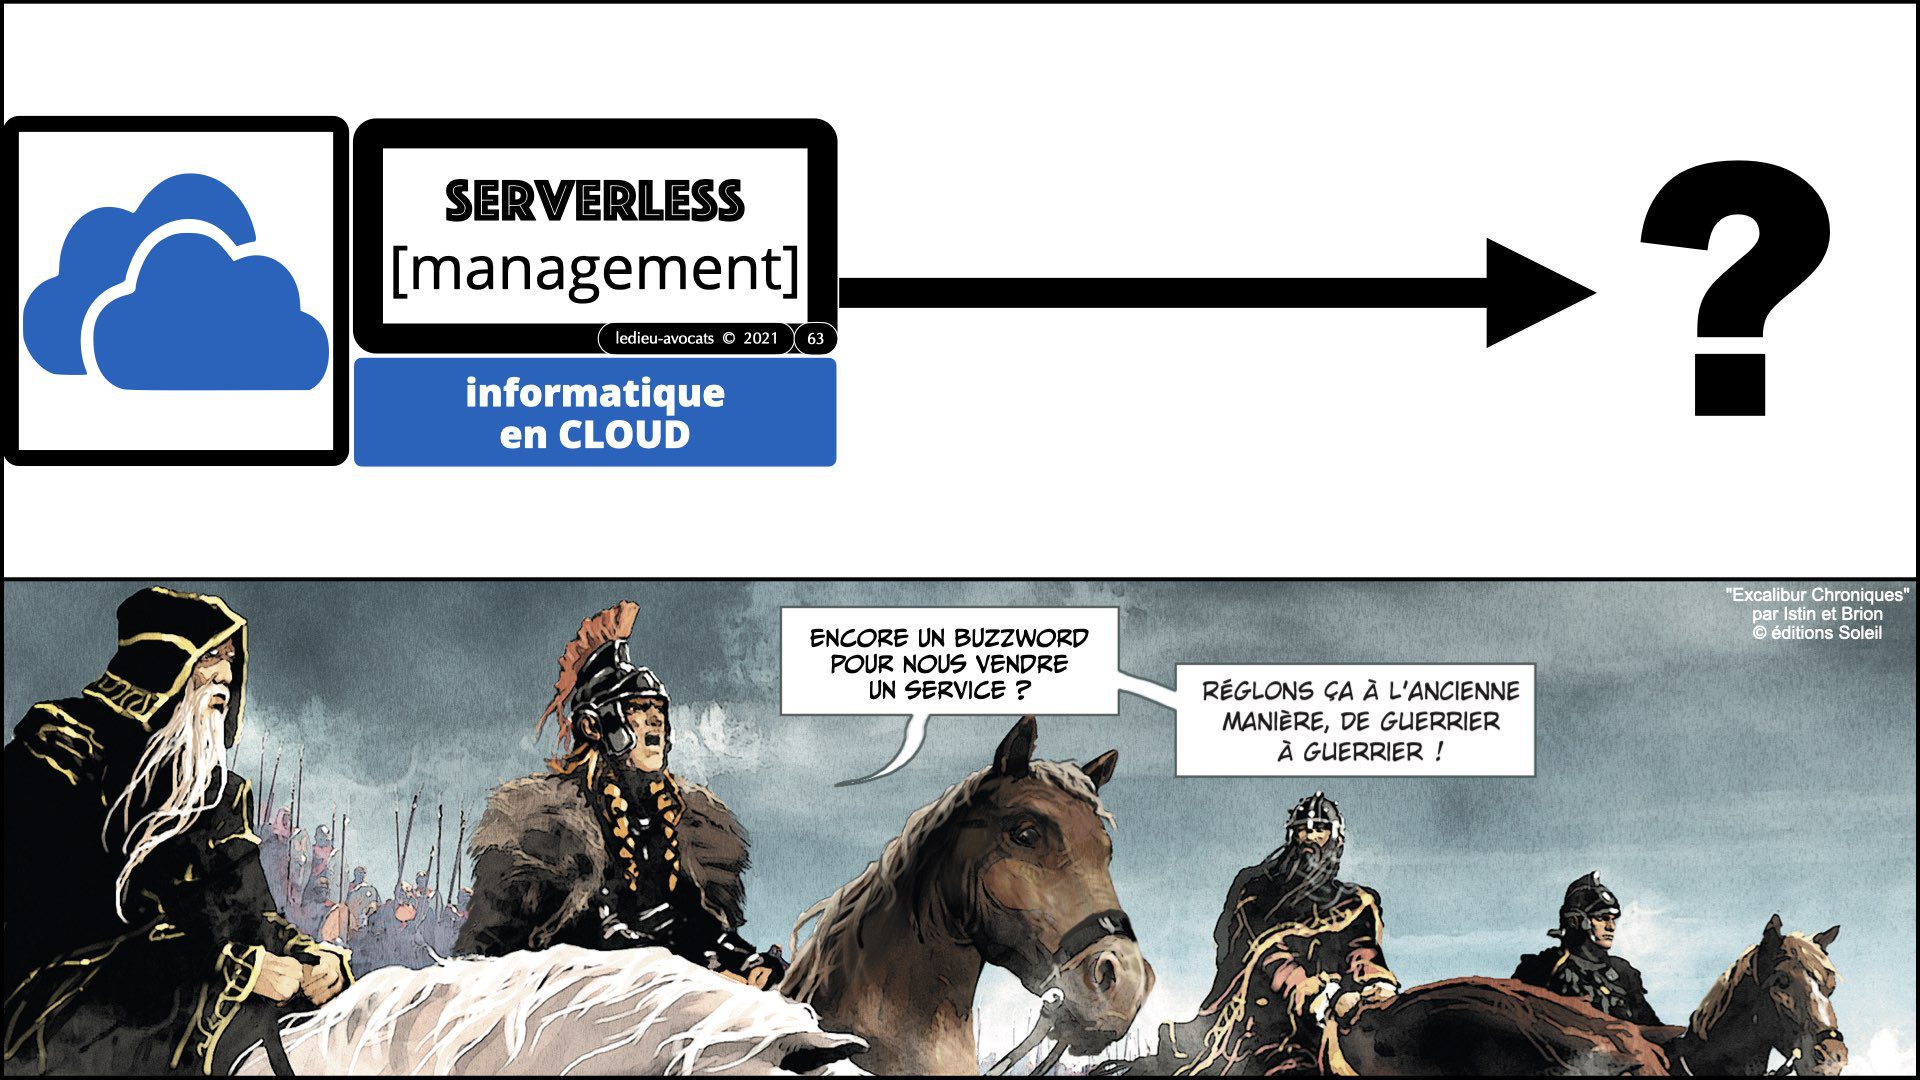 service LOGICIEL SaaS et "serverless" (management)